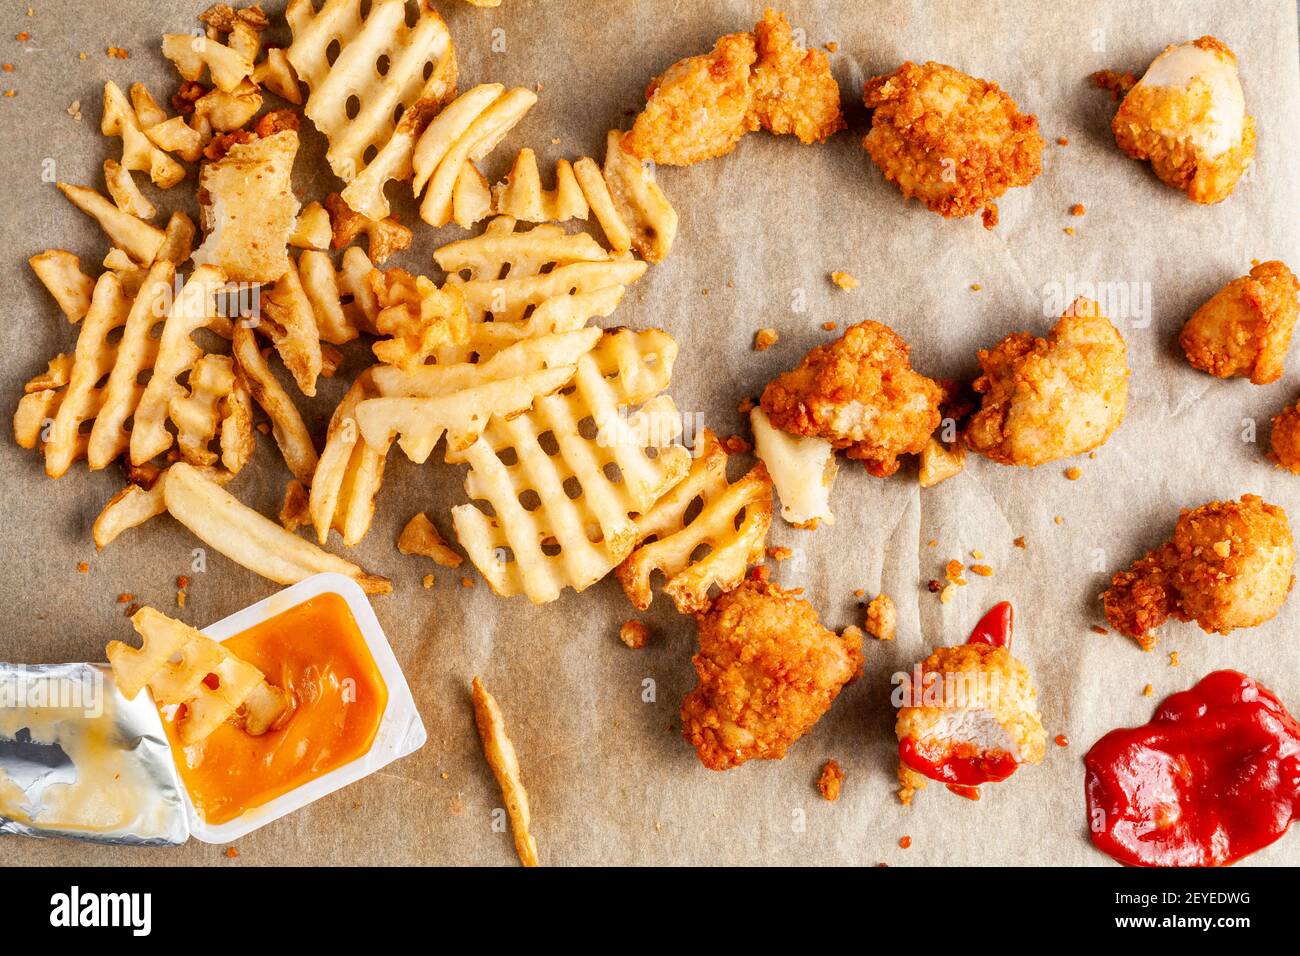 Flach aufgelegtes Bild eines chaotischen Essens mit Waffelfrites und  Chicken Nuggets auf Backpapier zusammen mit Ketchup und anderen Saucen und  Dips. Einige werden gegessen o Stockfotografie - Alamy